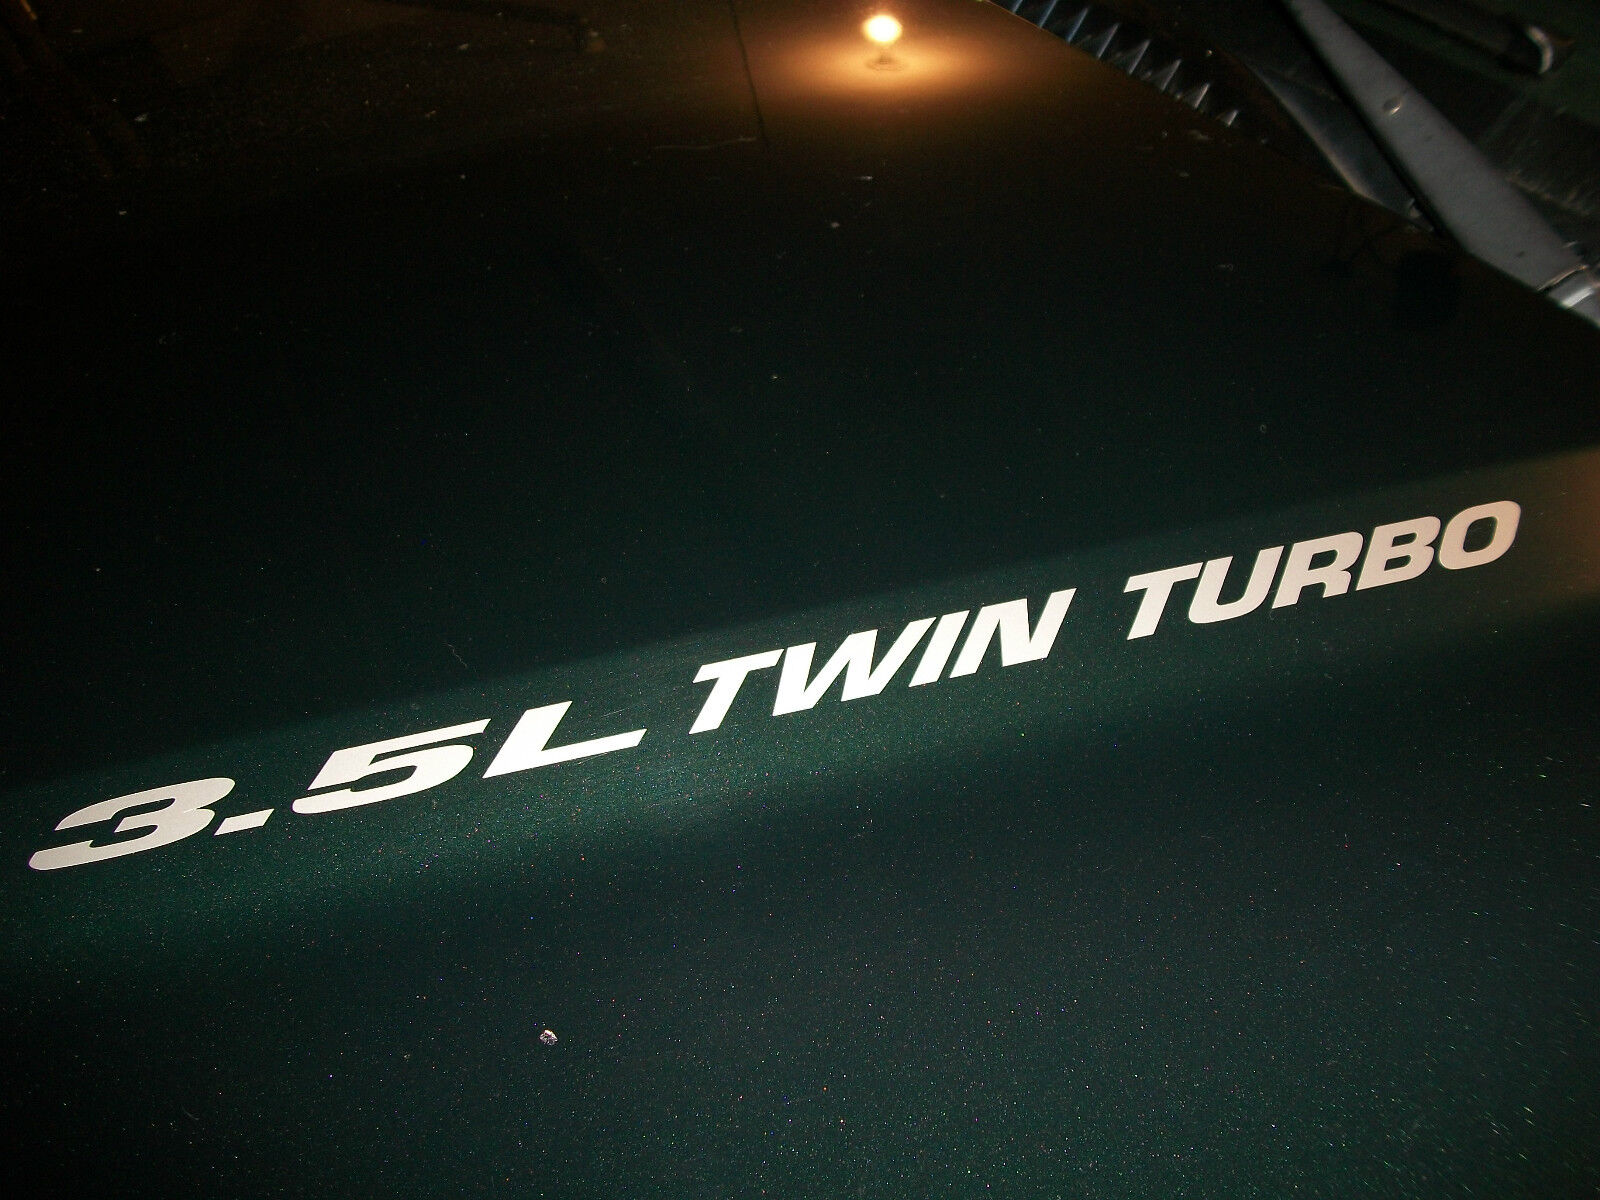 (2) 3.5L Twin Turbo Hood Decals sticker emblem Ford F150 Ecoboost V6 Truck